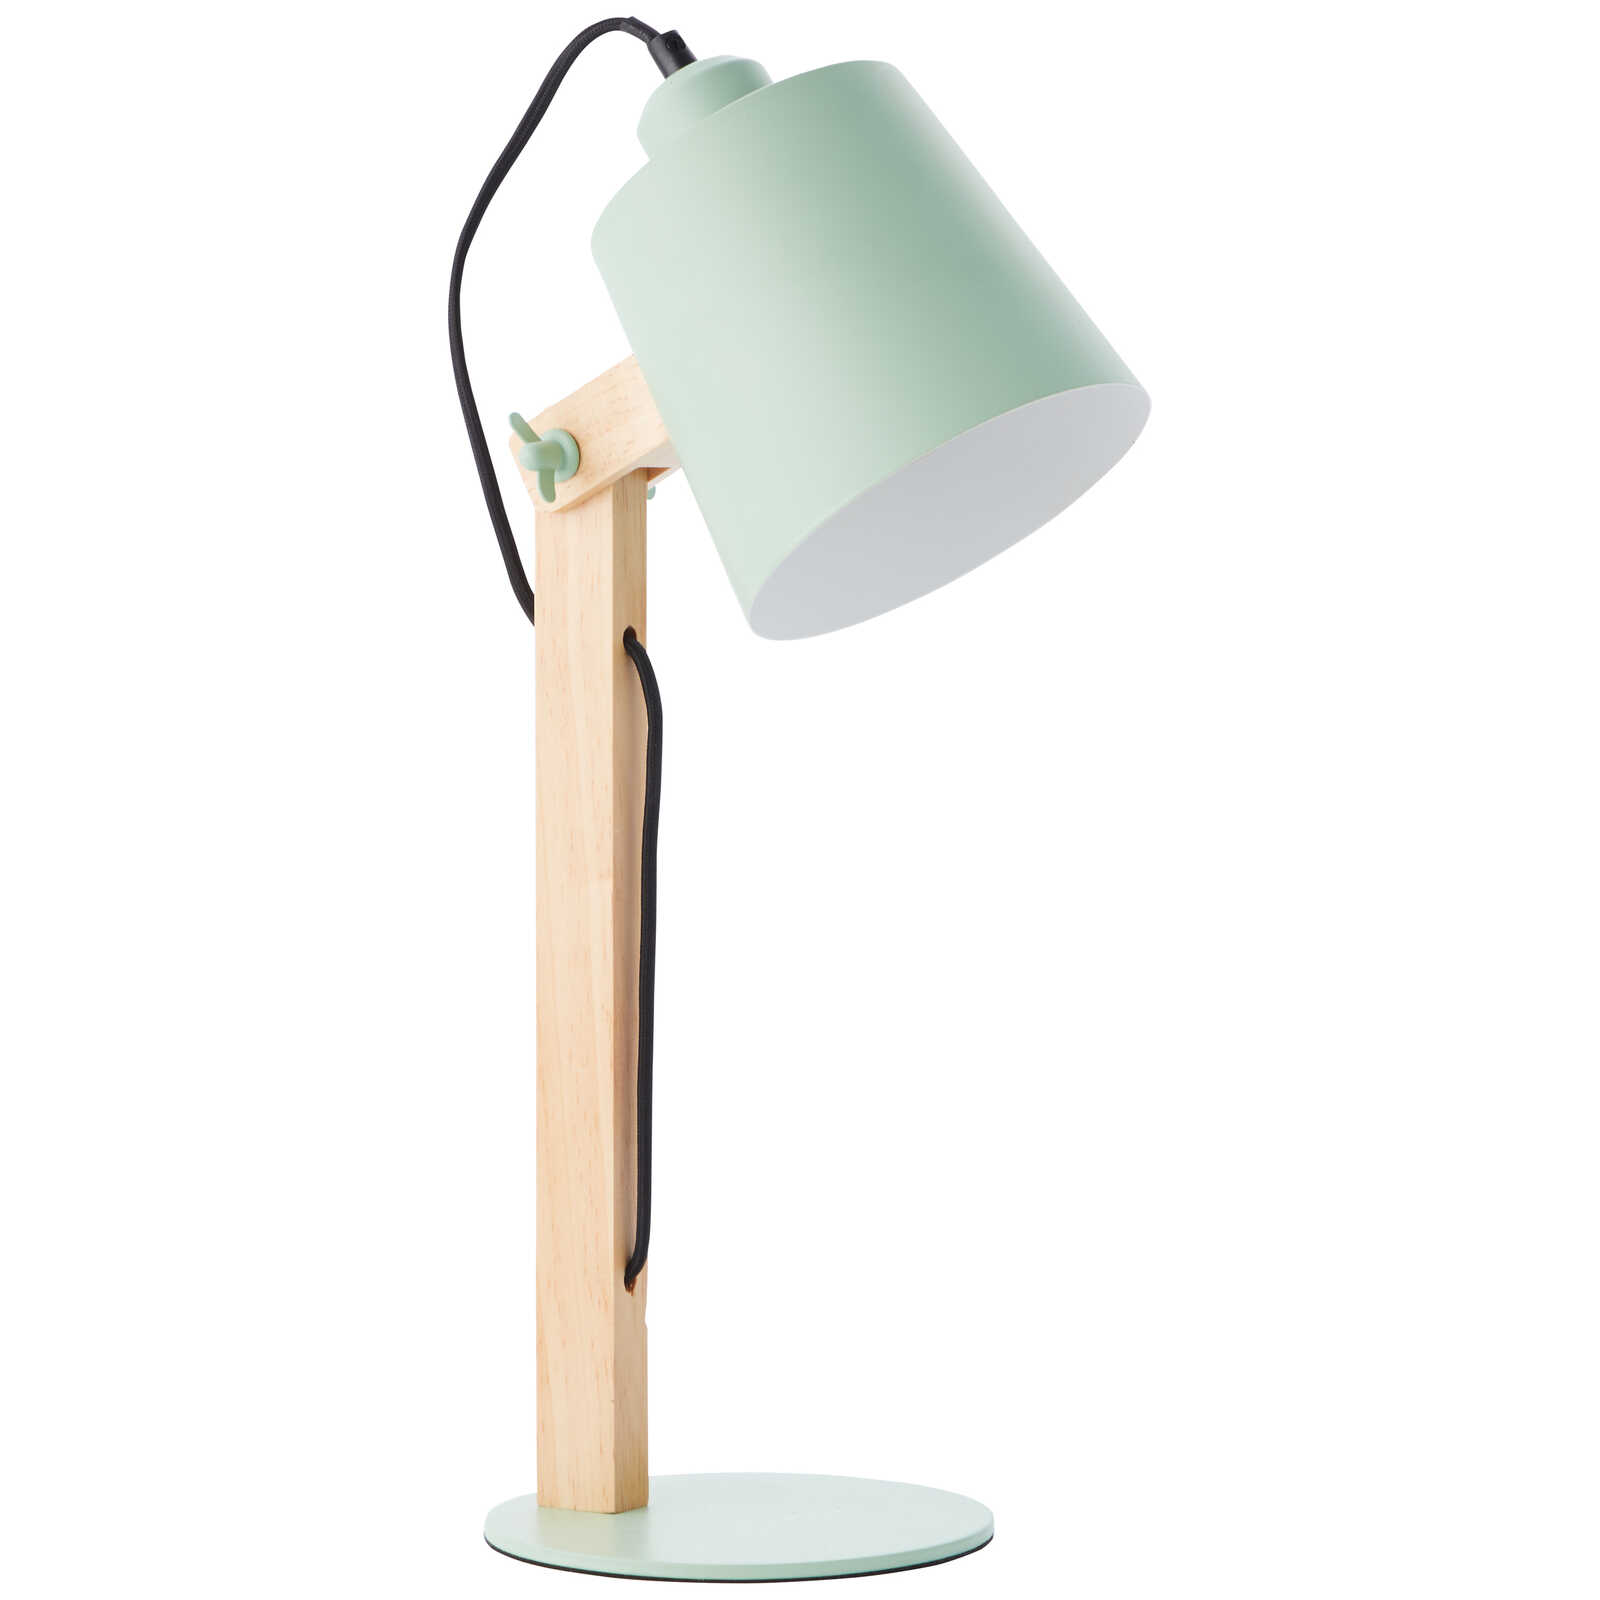             Lampe de table en bois - Paul 1 - Vert
        